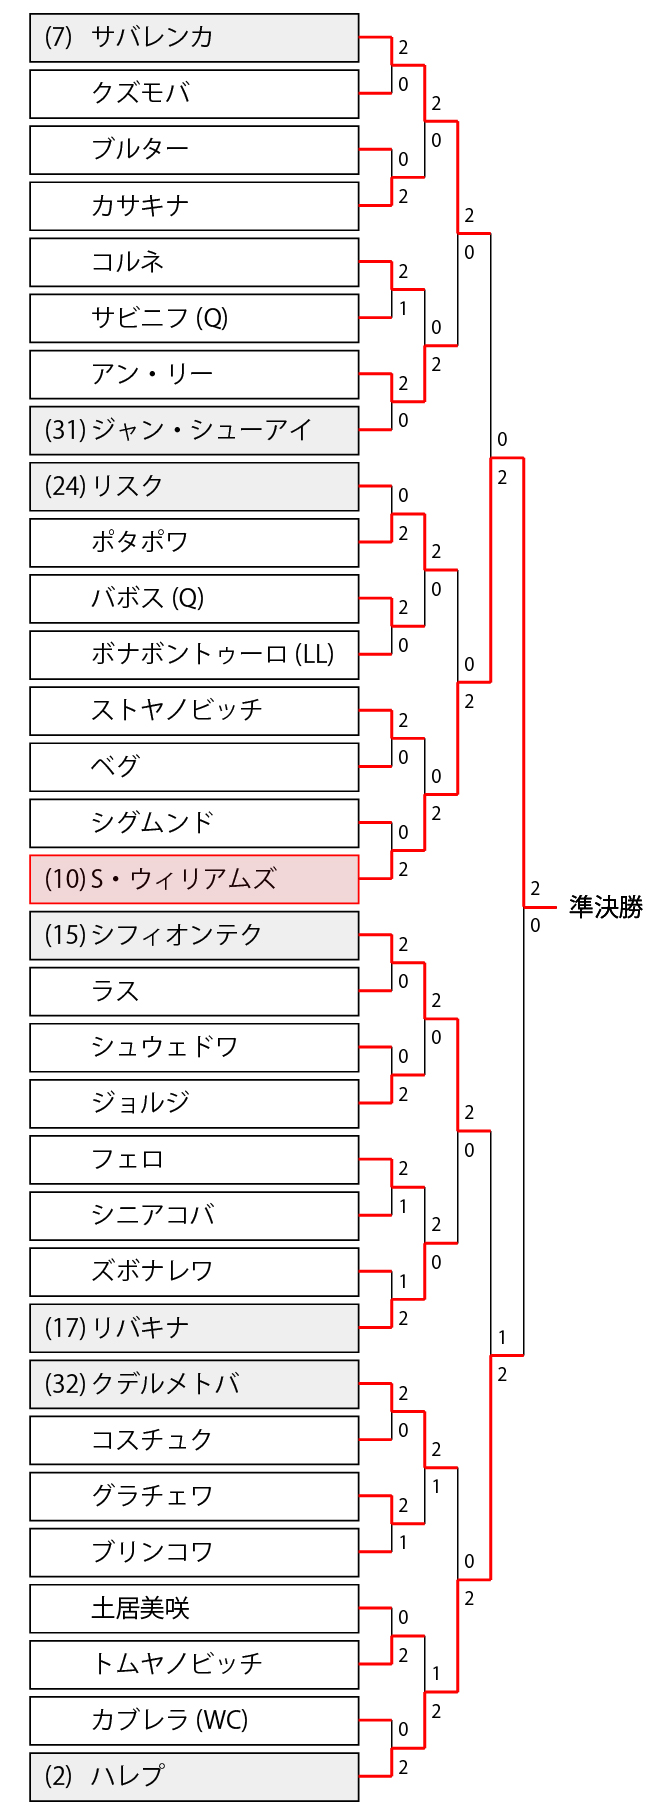 全豪オープン21 女子ドロー 最新結果 シングルス ダブルス 予選 車いすトーナメント表と大坂なおみら組み合わせ